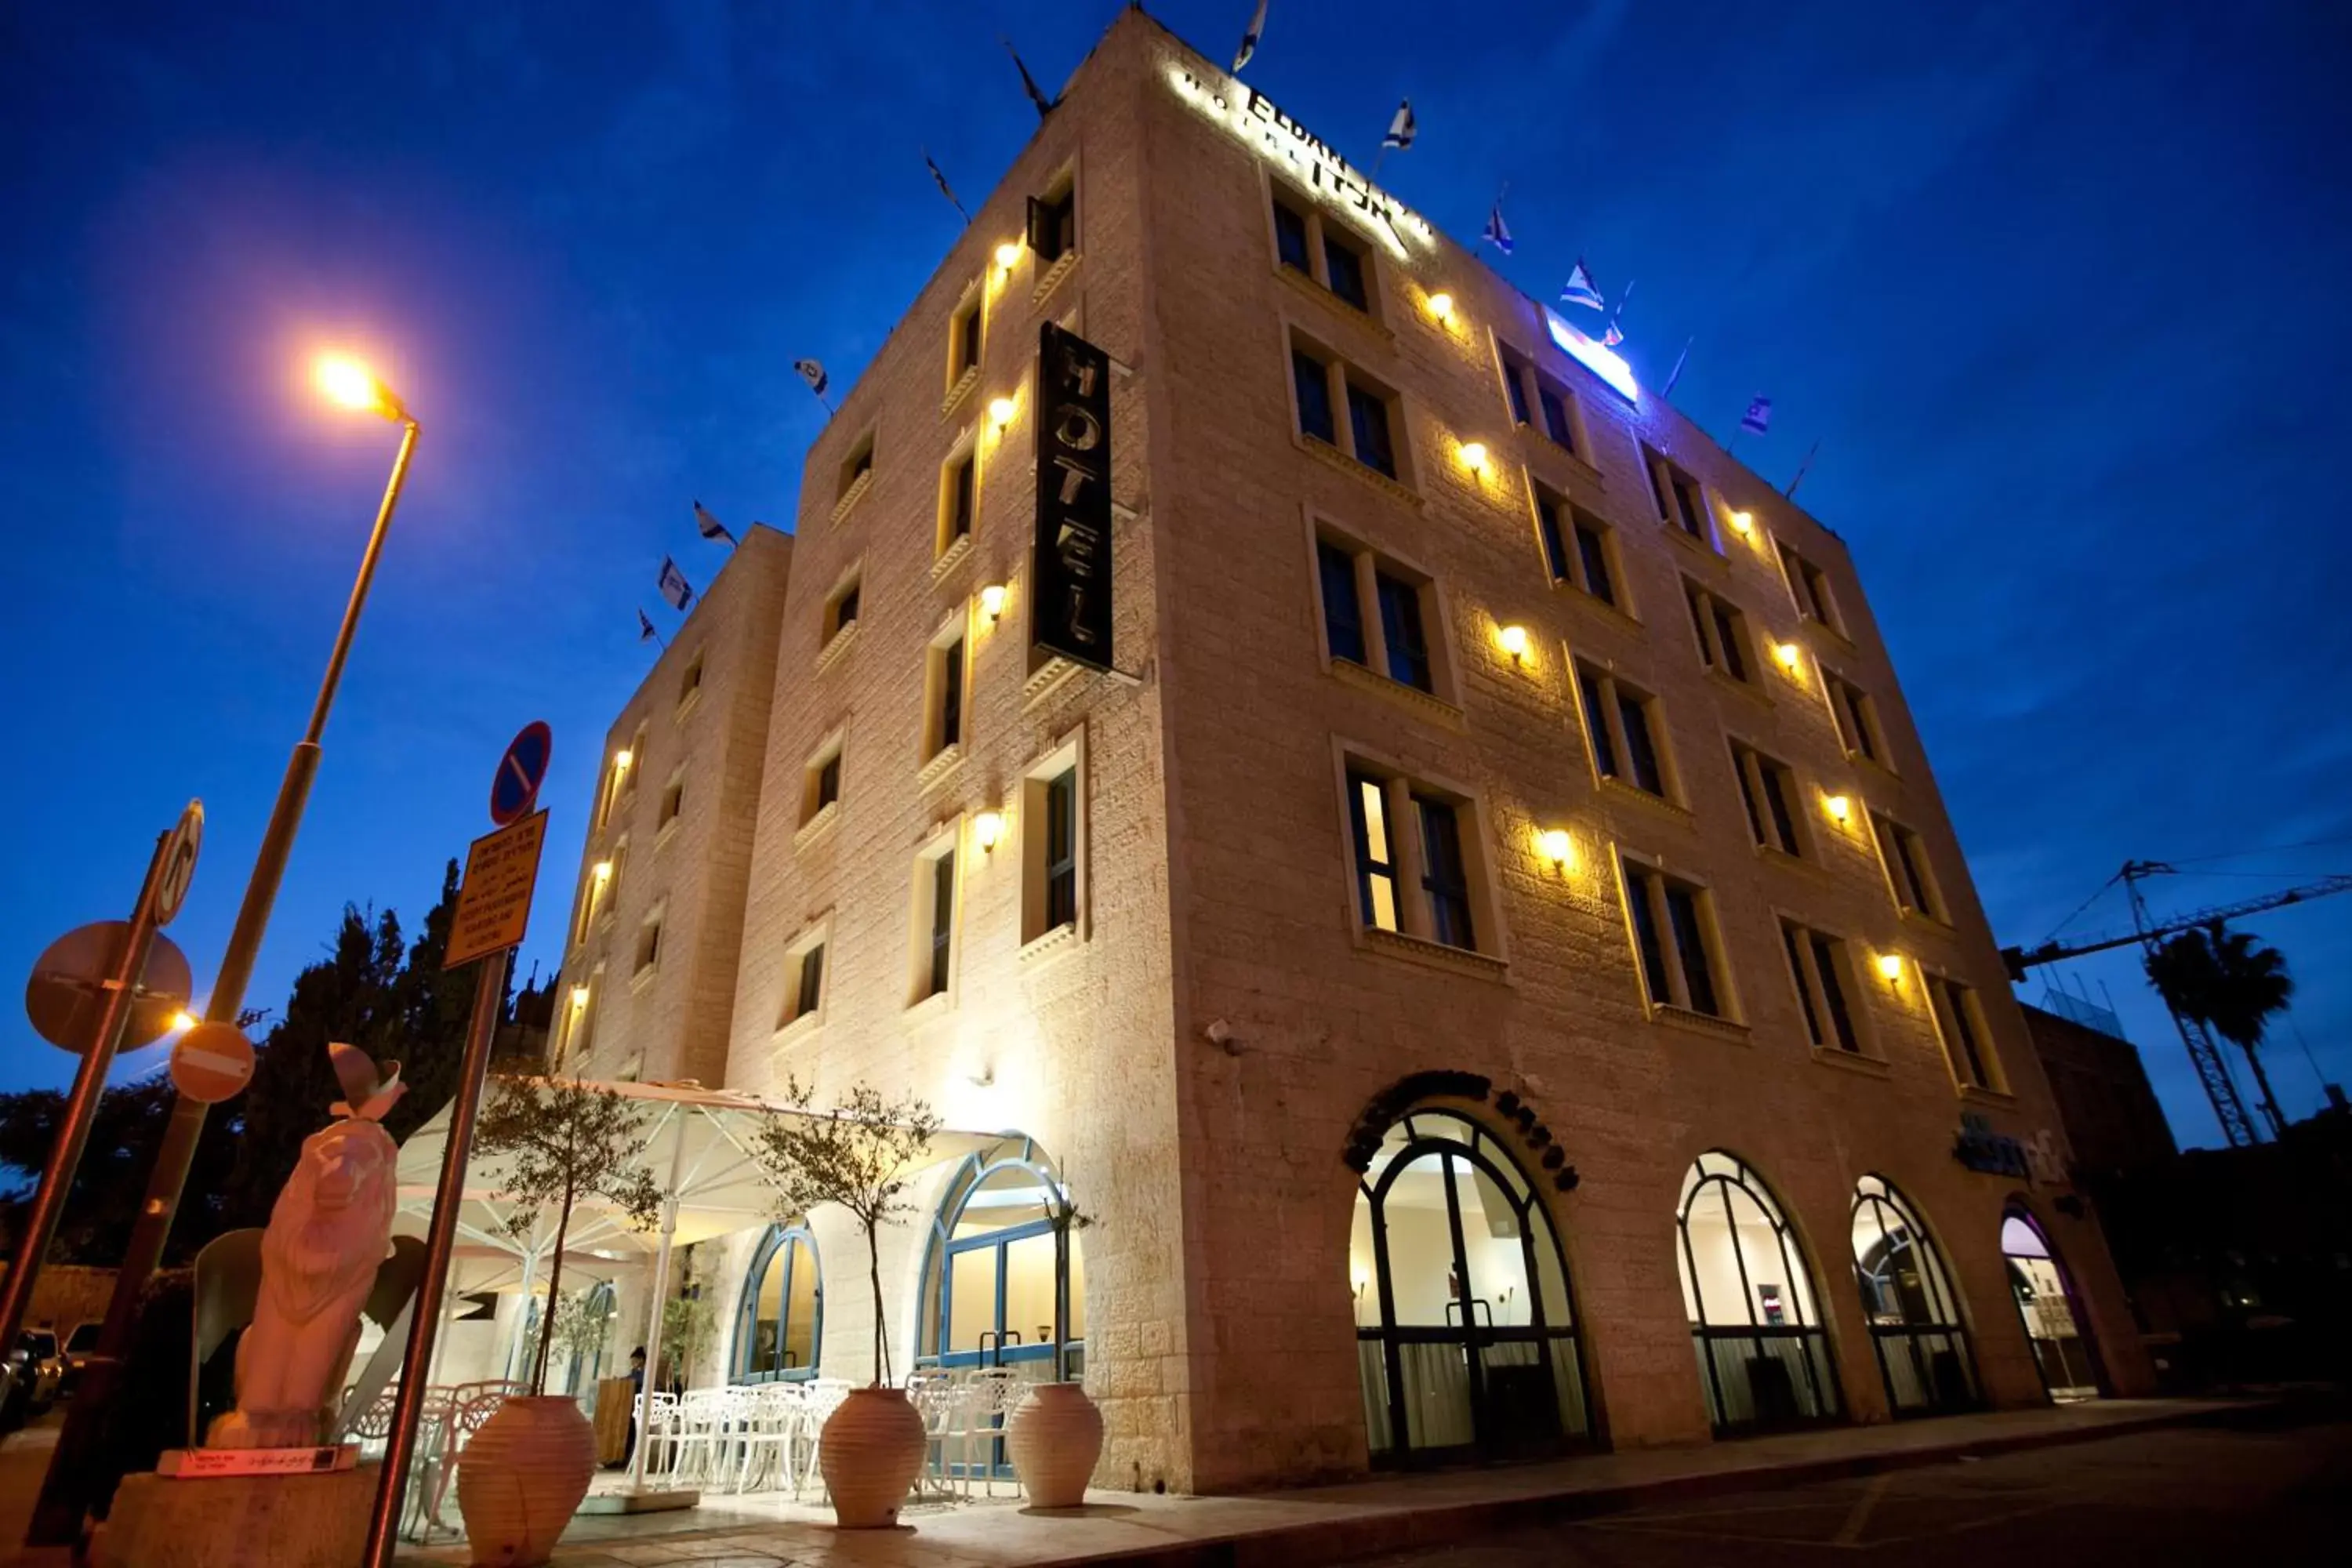 Facade/entrance, Property Building in Eldan Hotel